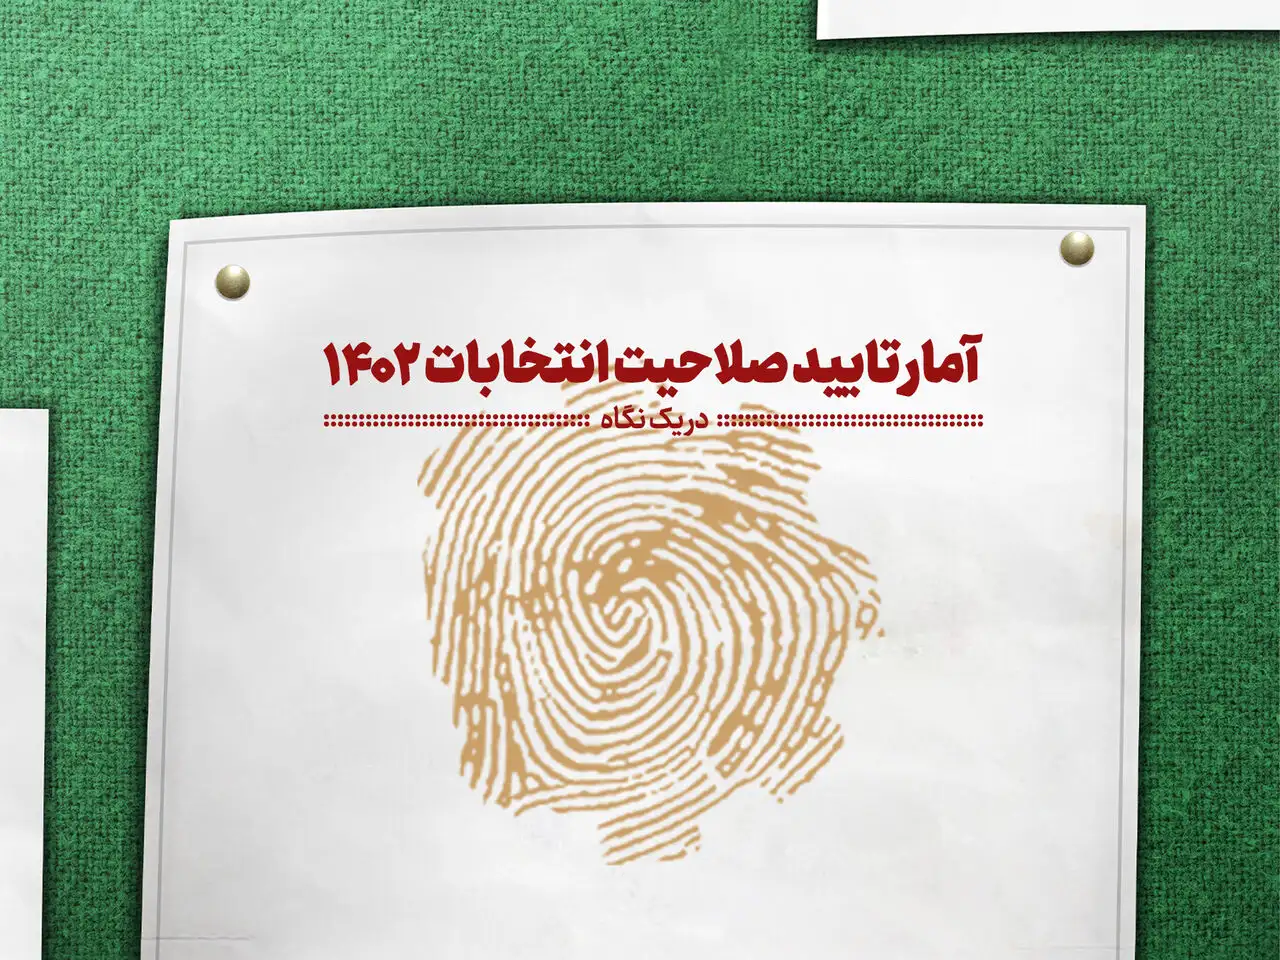 ۵۰ درصد داوطلبان انتخابات مجلس در کرمان تایید صلاحیت شدند